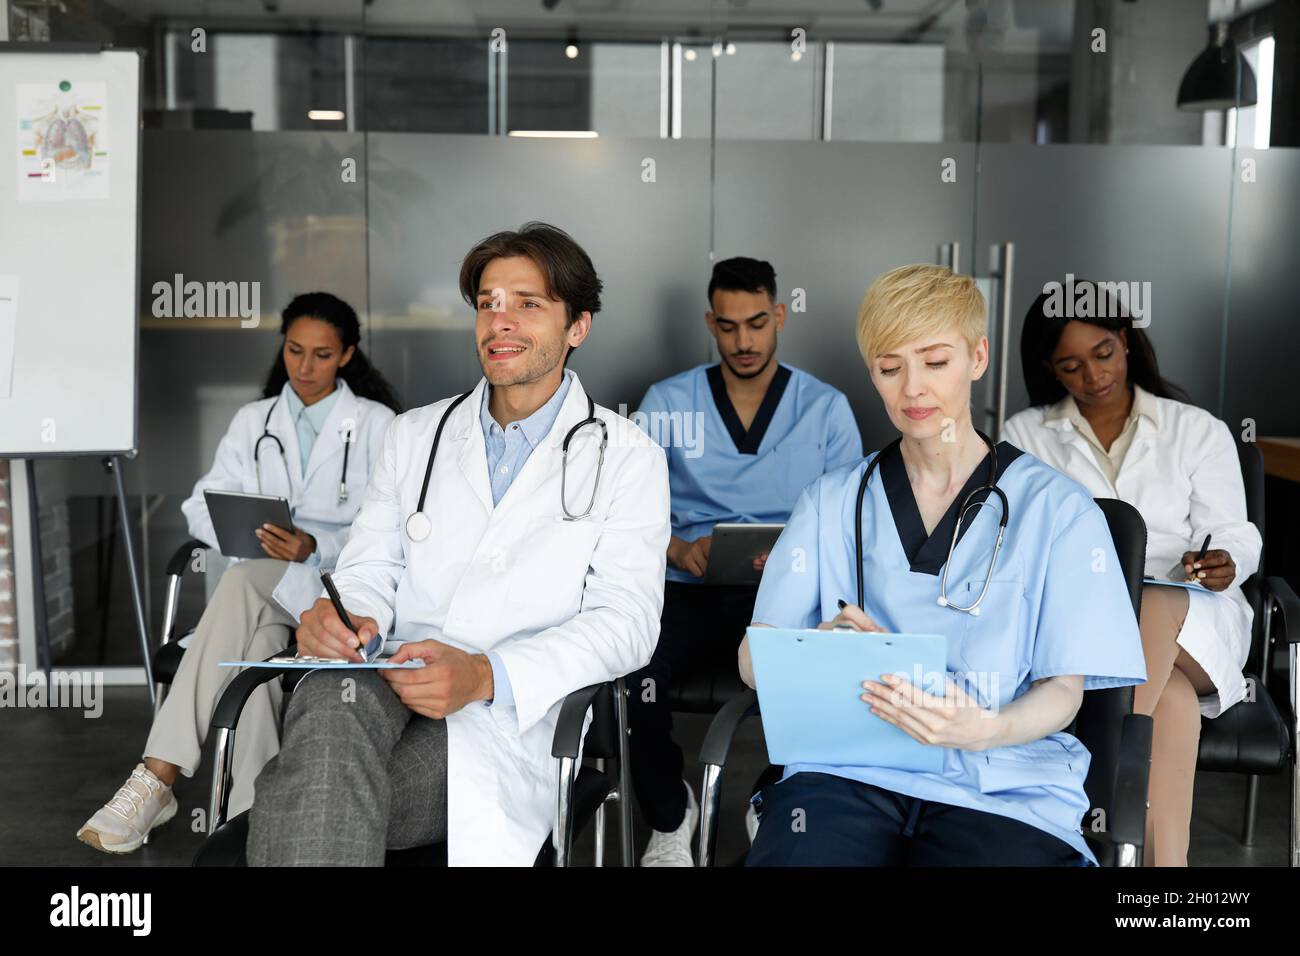 Aus- und Weiterbildung für Fachkräfte im Gesundheitswesen. Multiethnische Gruppe von Ärzten in Arbeitskleidung, die an einer medizinischen Konferenz oder Schulung an der cli teilnehmen Stockfoto